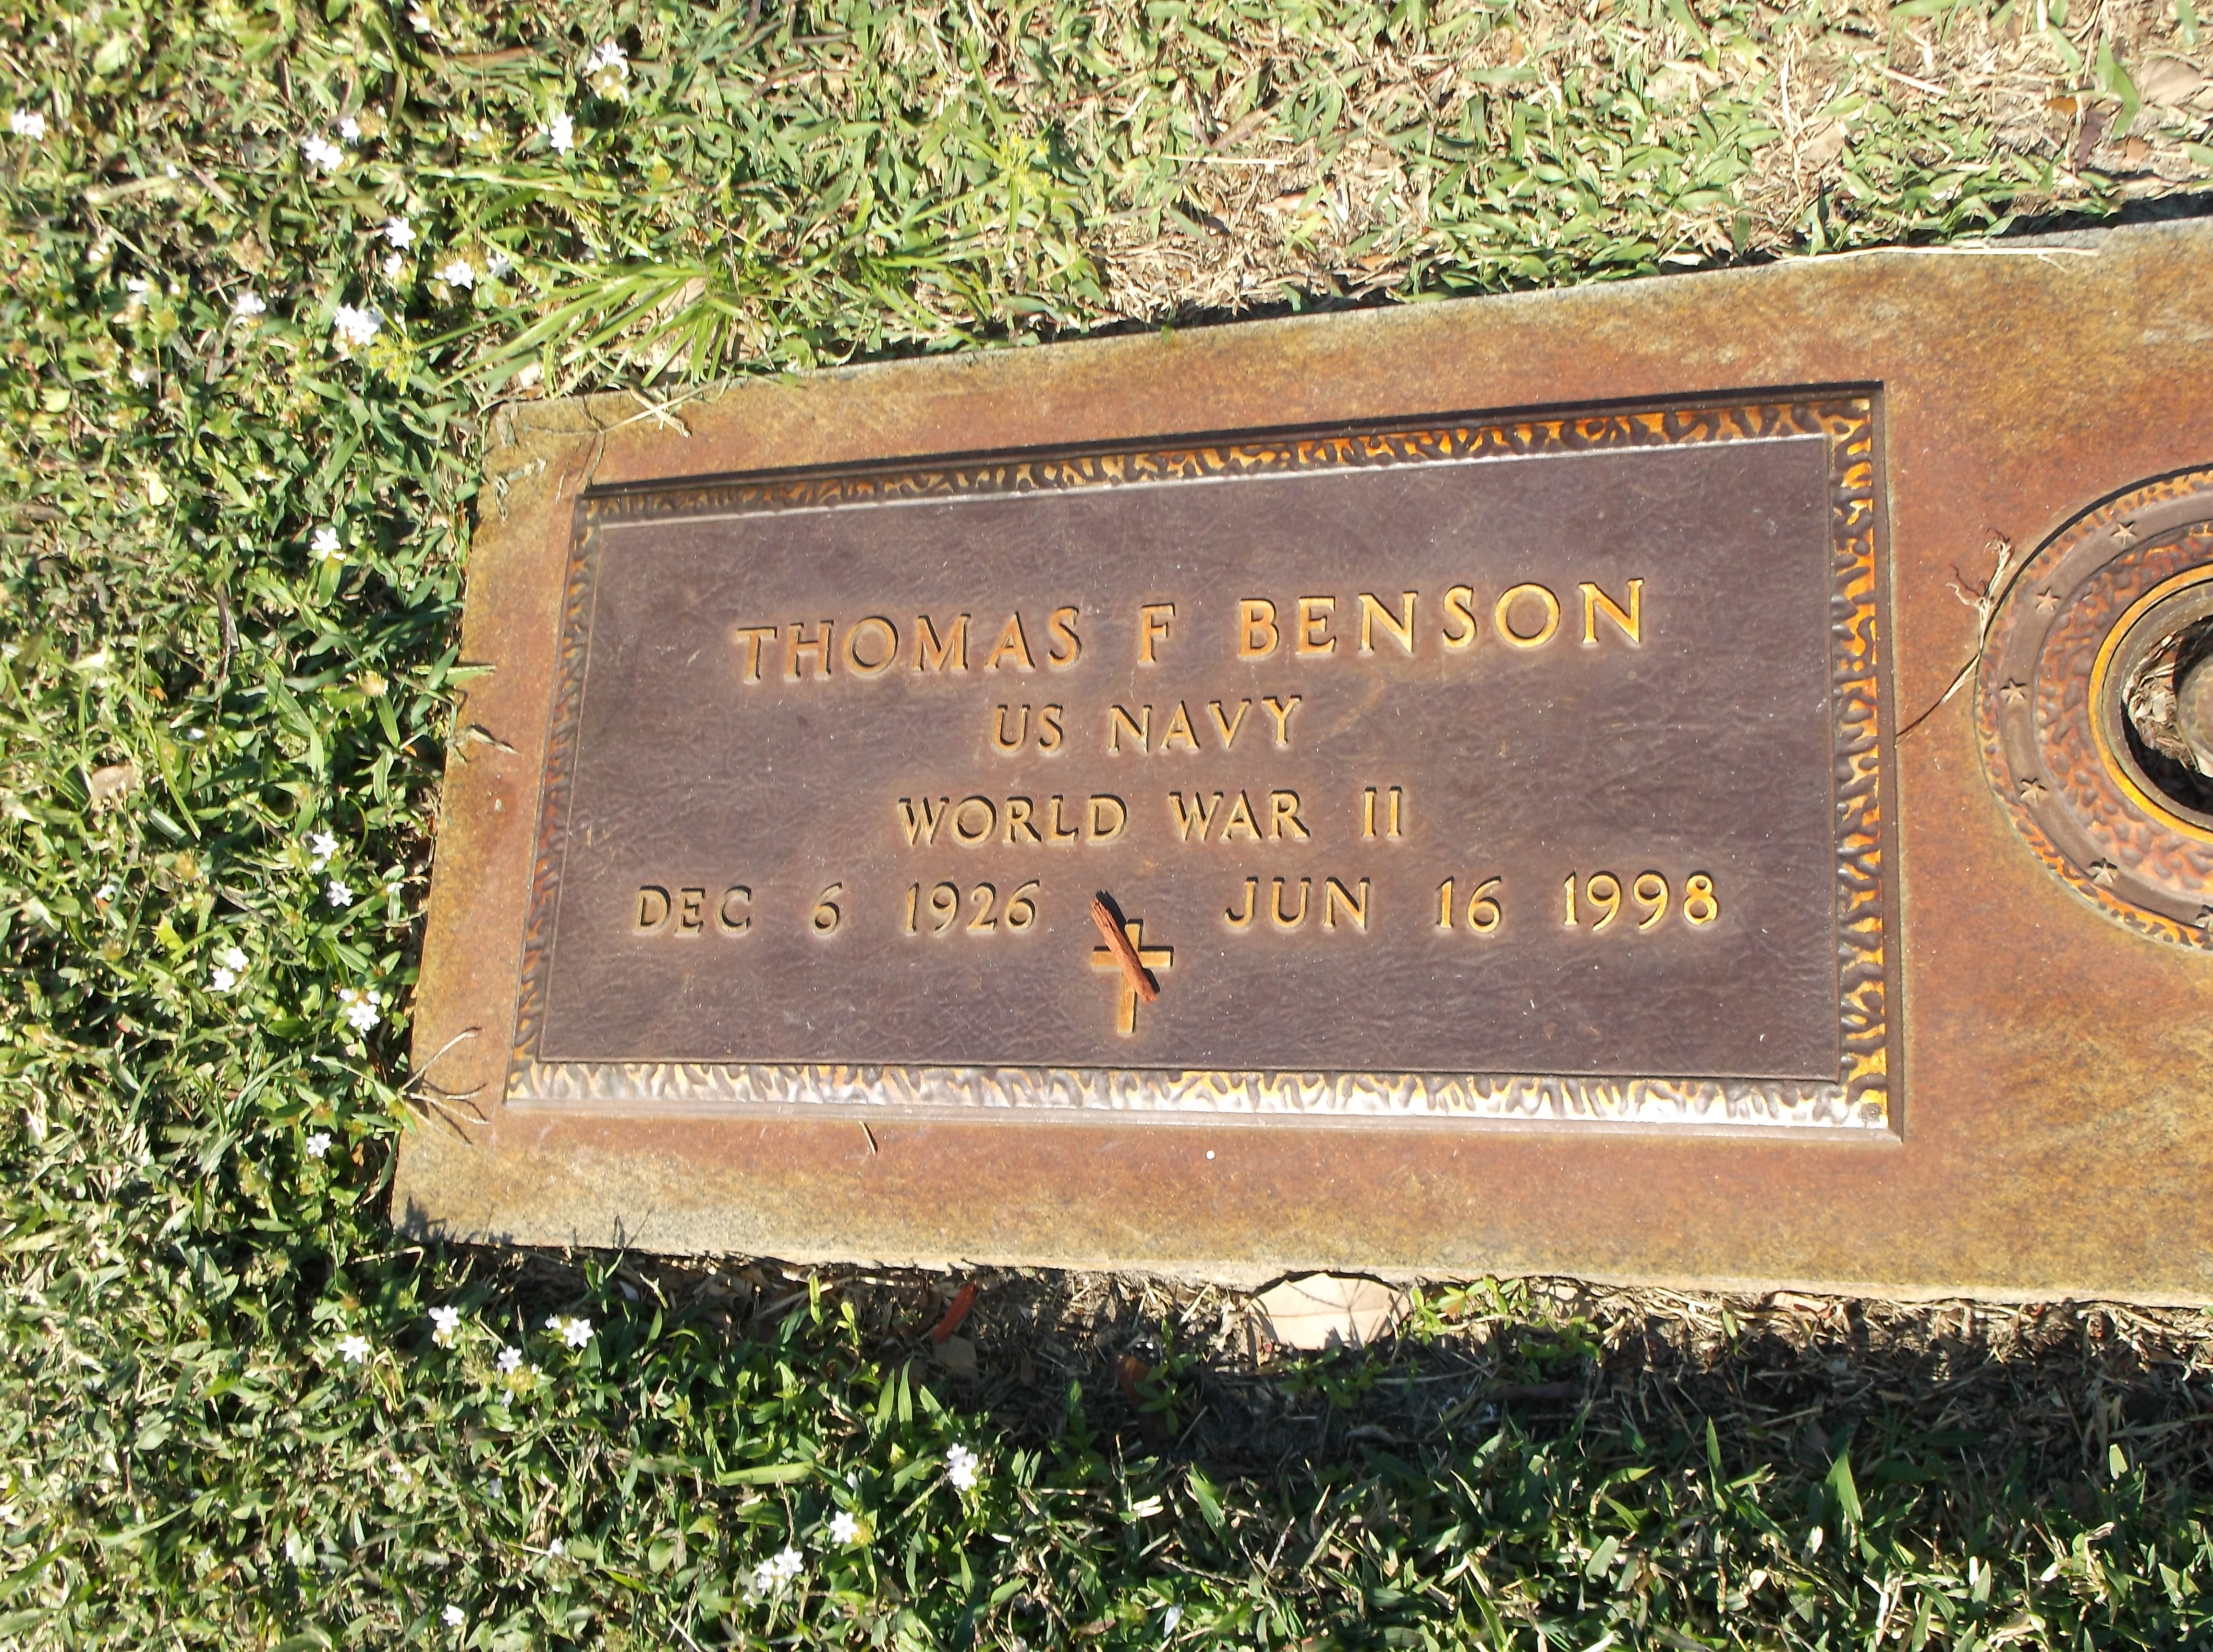 Thomas F Benson